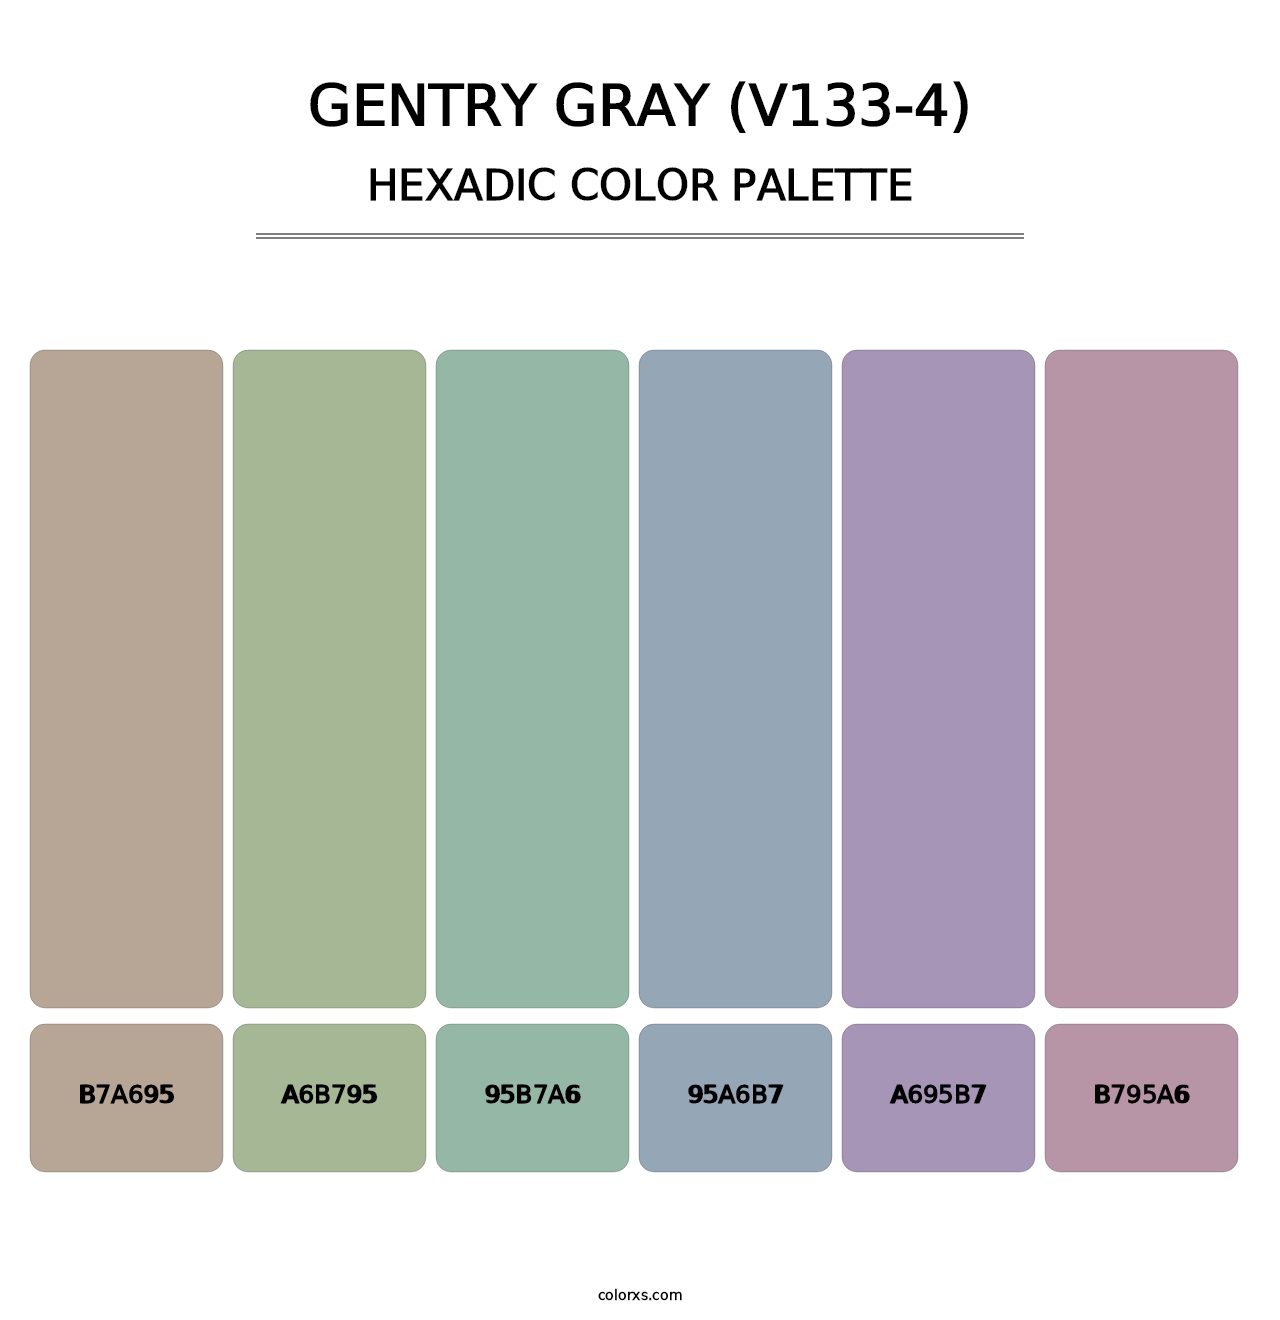 Gentry Gray (V133-4) - Hexadic Color Palette